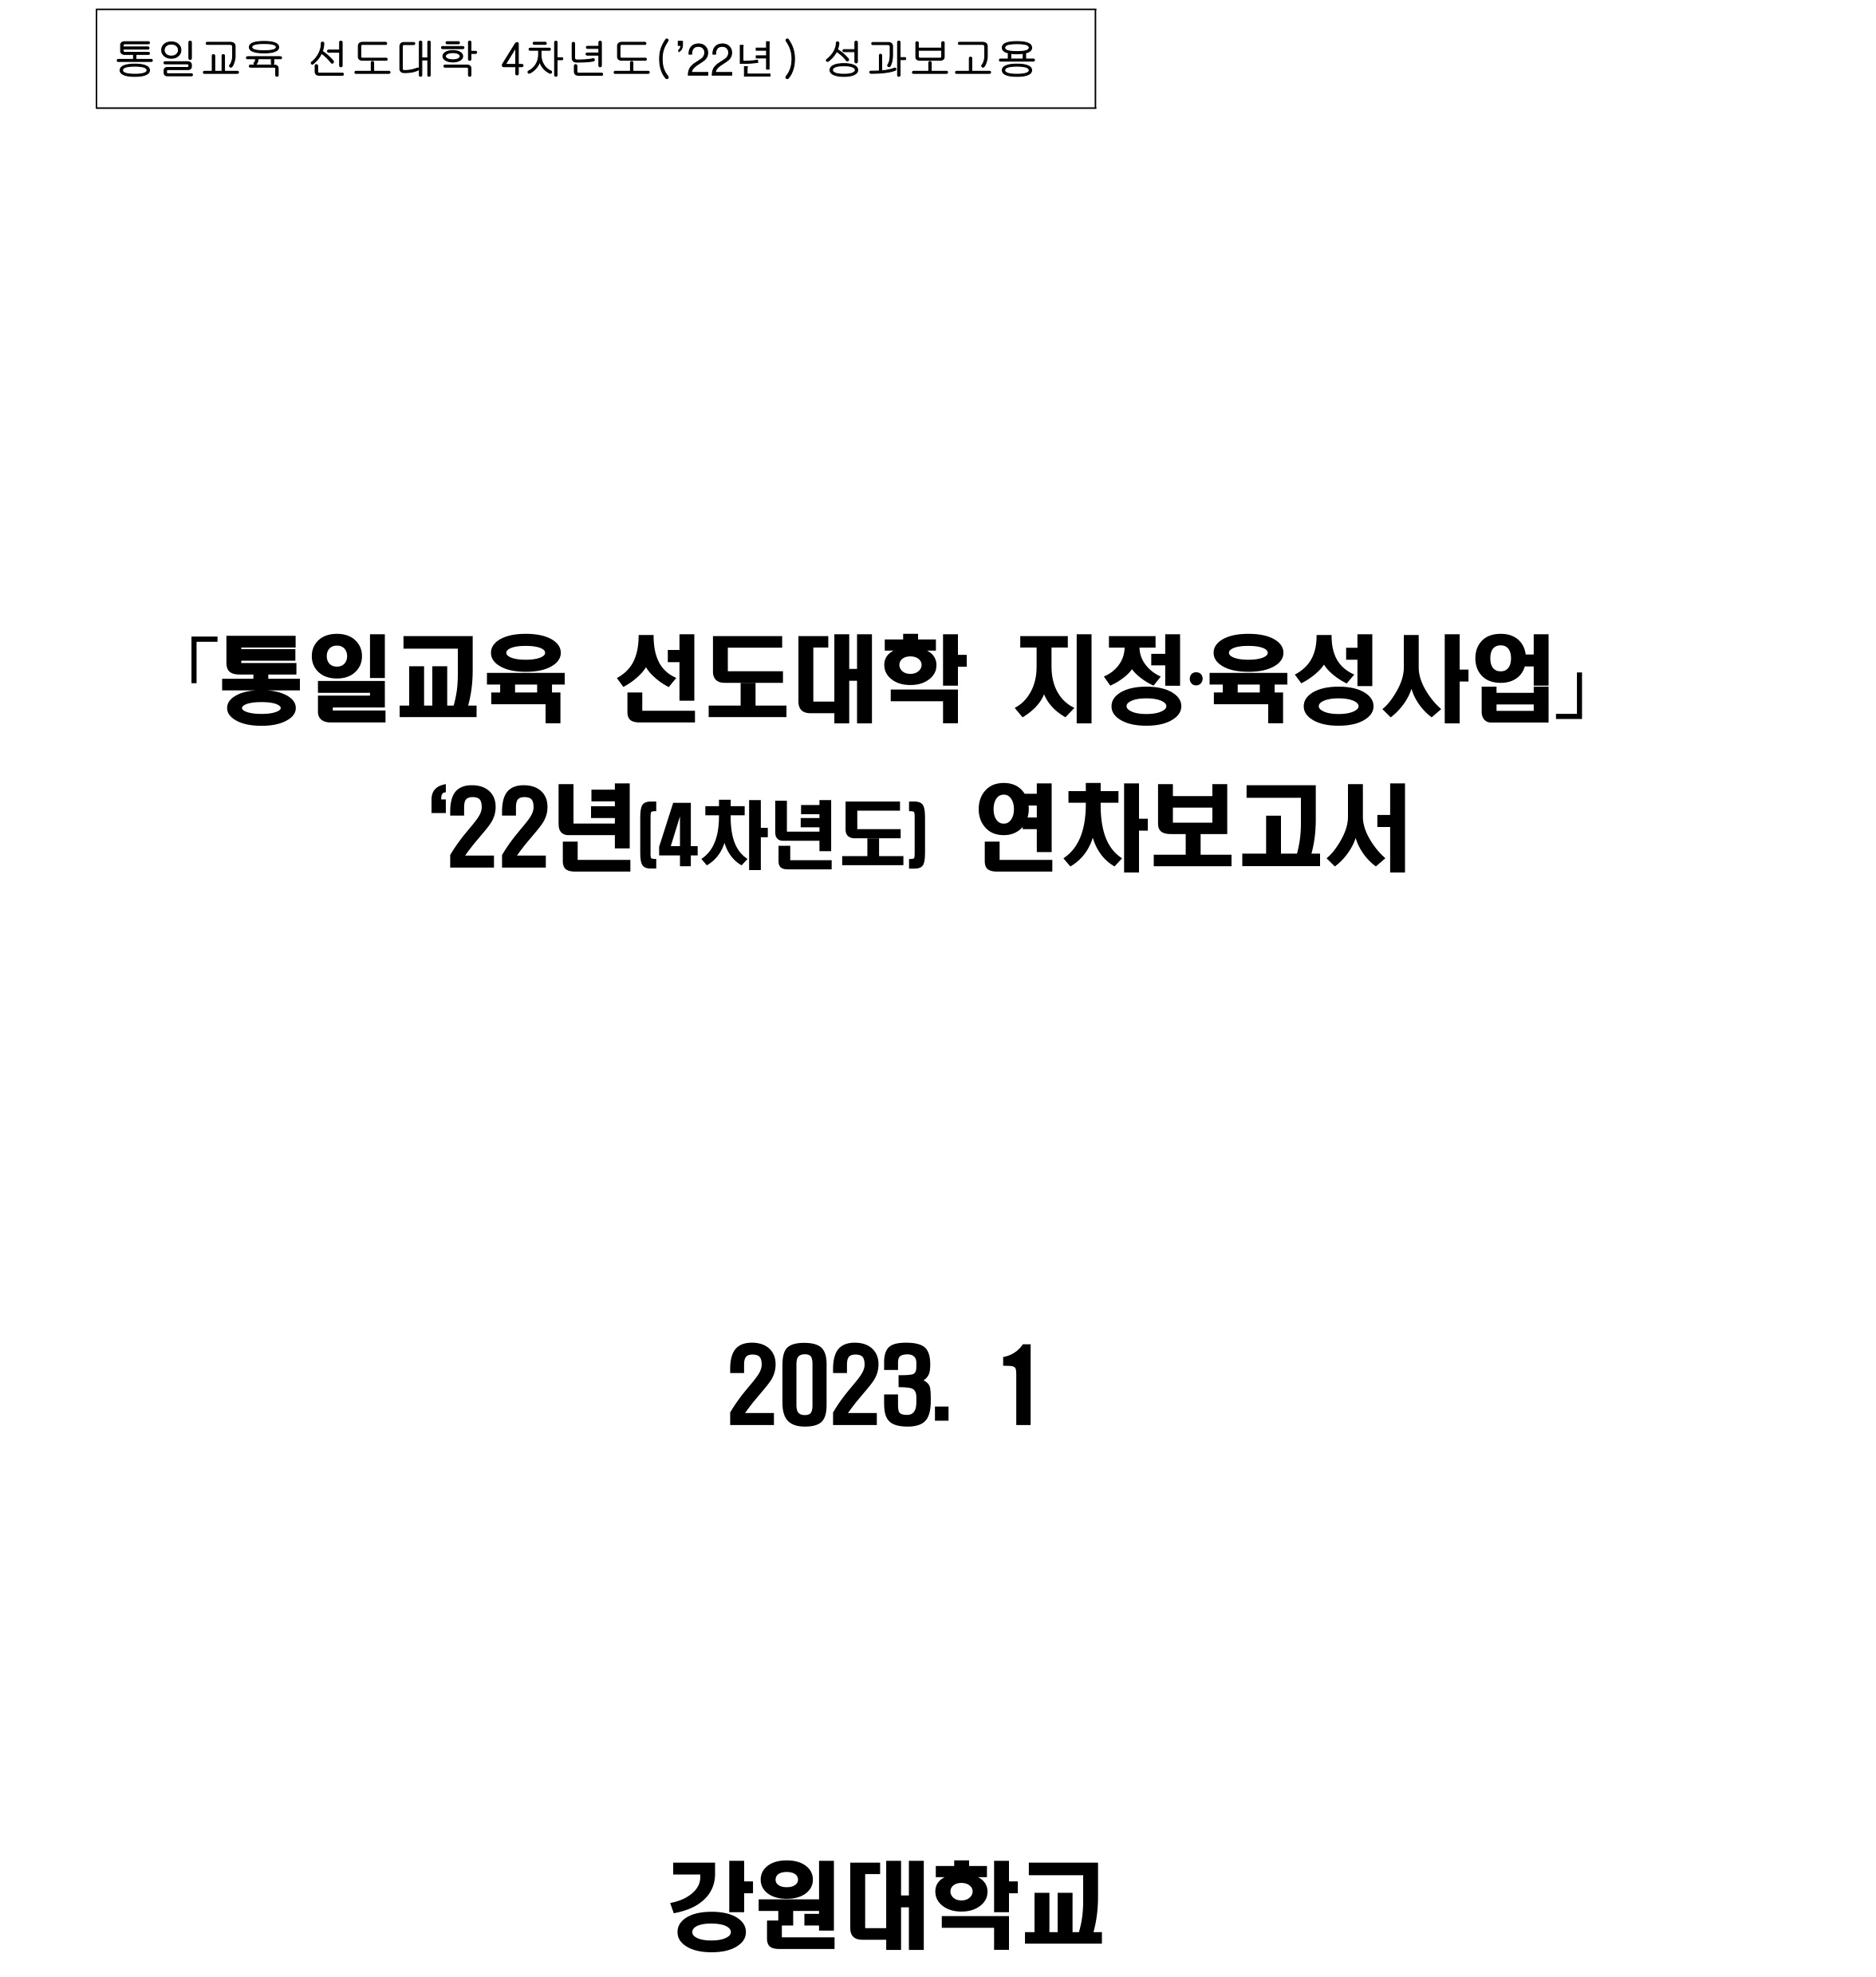 통일교육 선도대학 2022년 성과보고서(강원대학교)